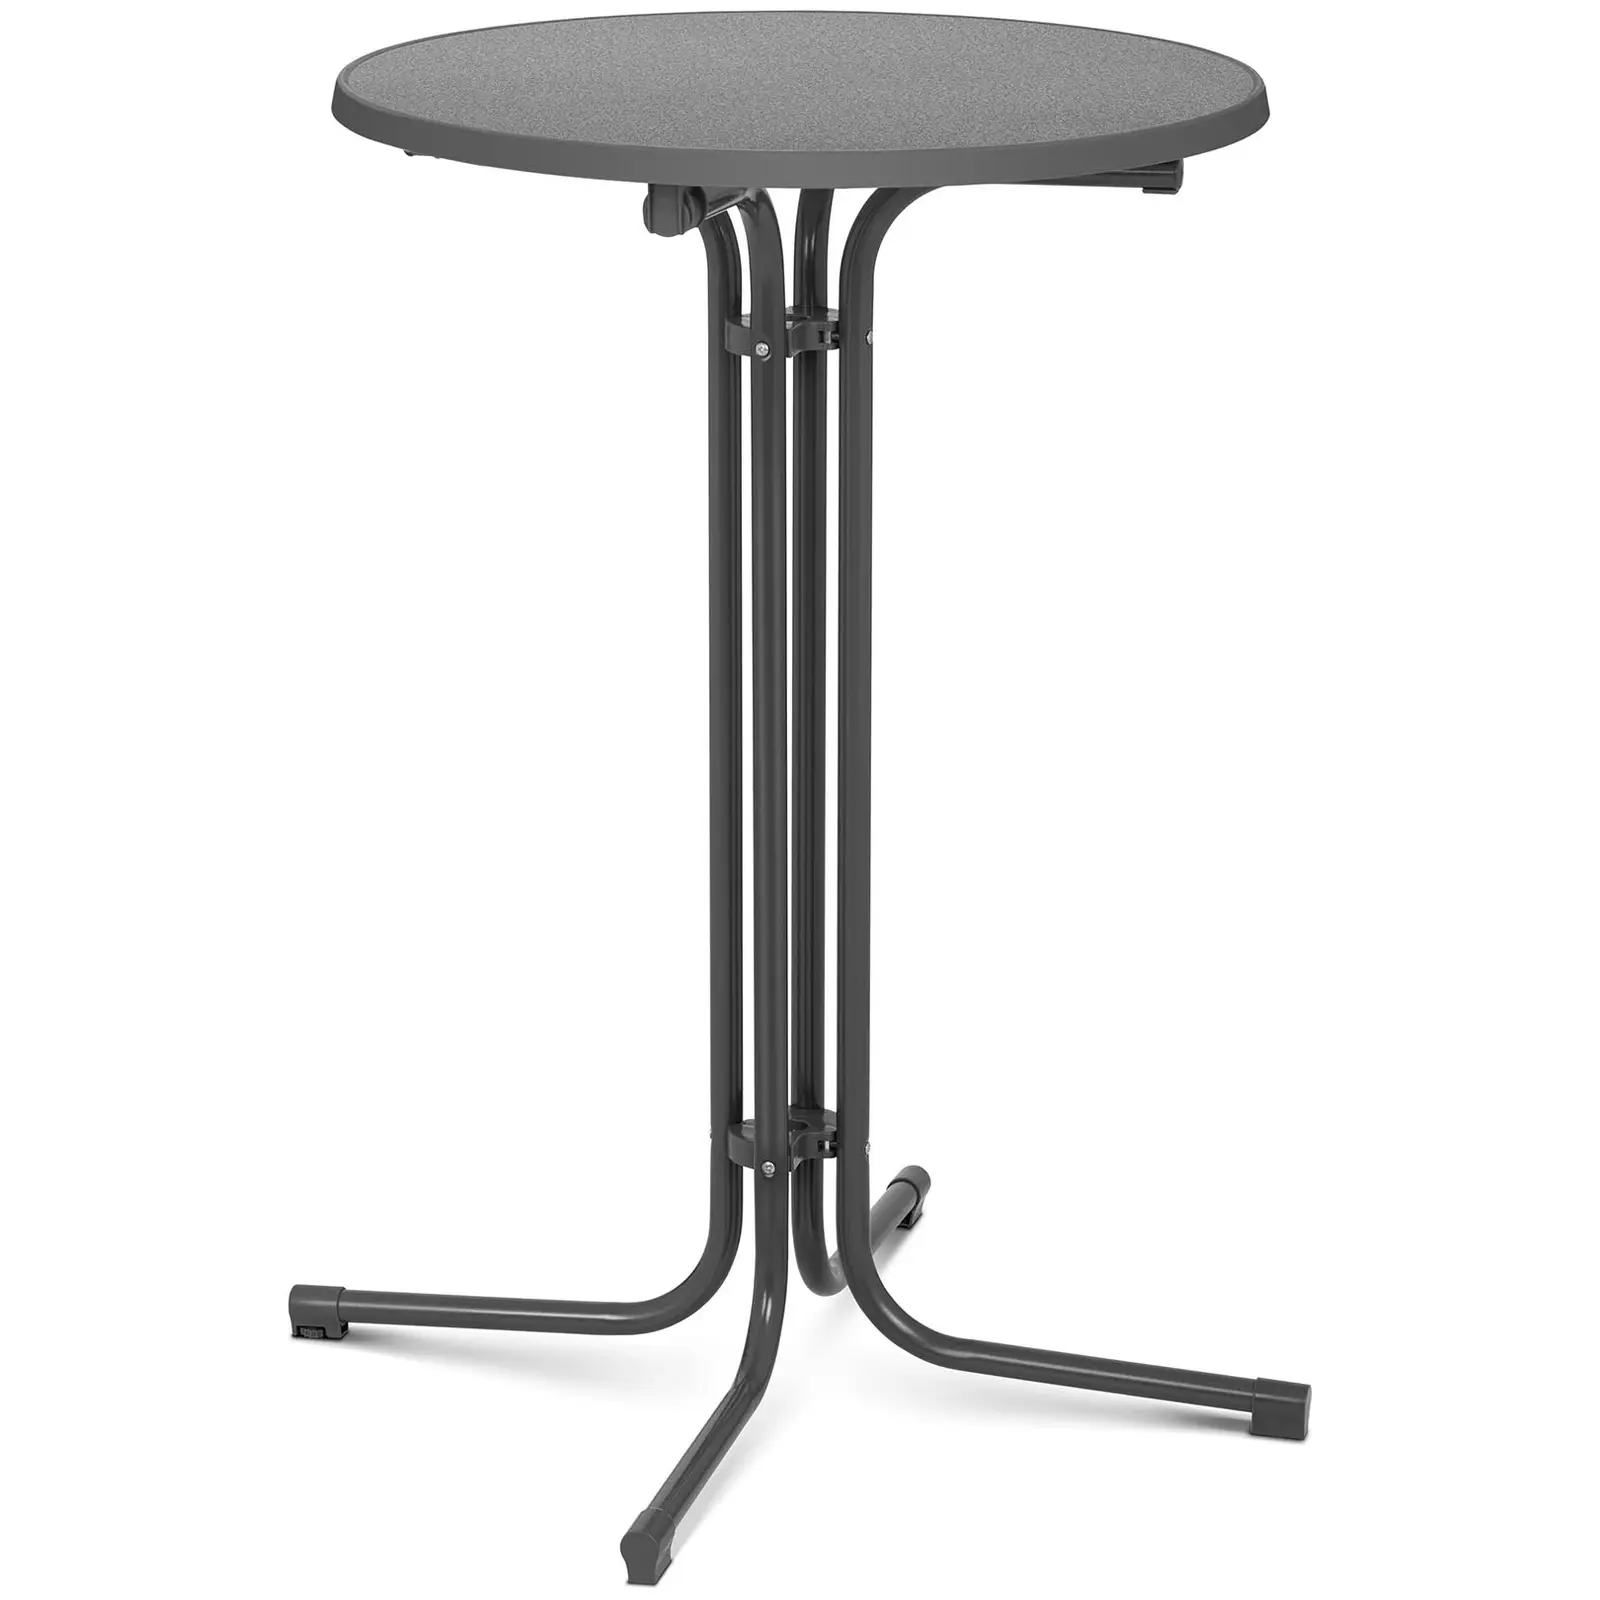 Koktejlový stůl - Ø 70 cm - skládací - šedý